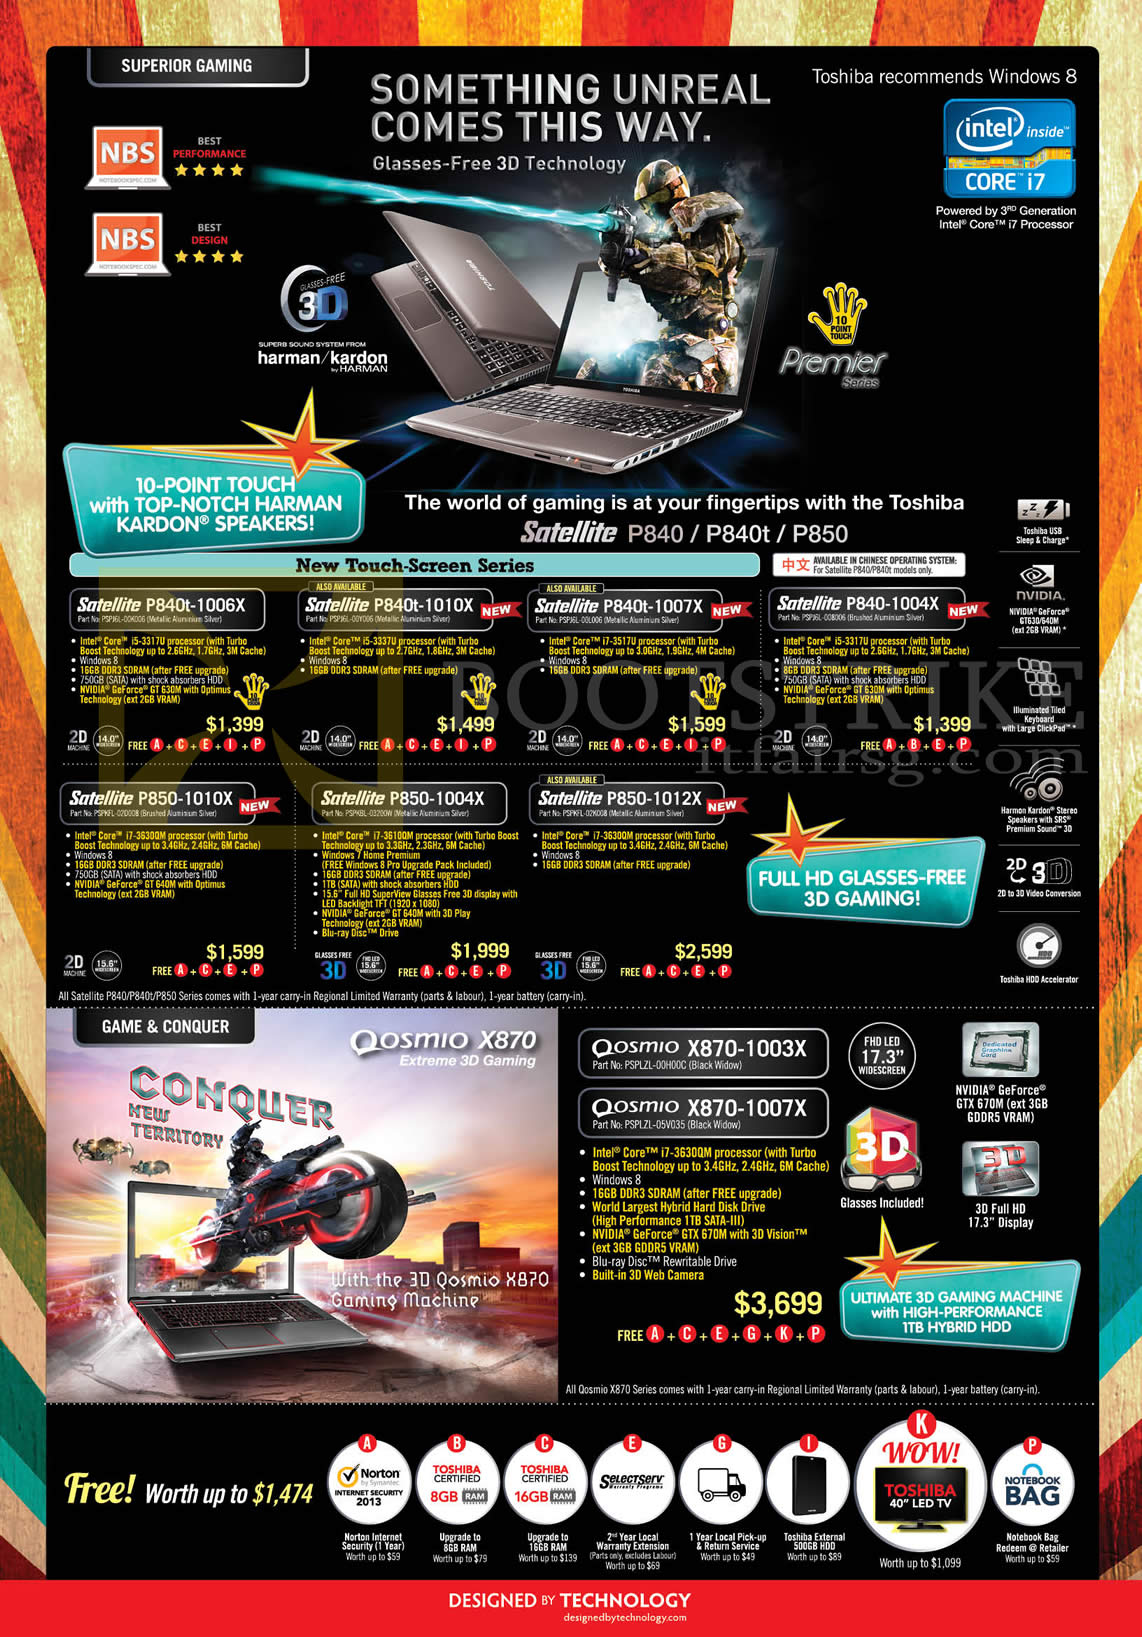 IT SHOW 2013 price list image brochure of Toshiba Notebooks Satellite P840t-1006X, P840t-1010X, P840t-1007X, P840-1004X, P850-1010X, P850-1004X, P850-1012X, Qosmio X870-1003X, X870-1007X